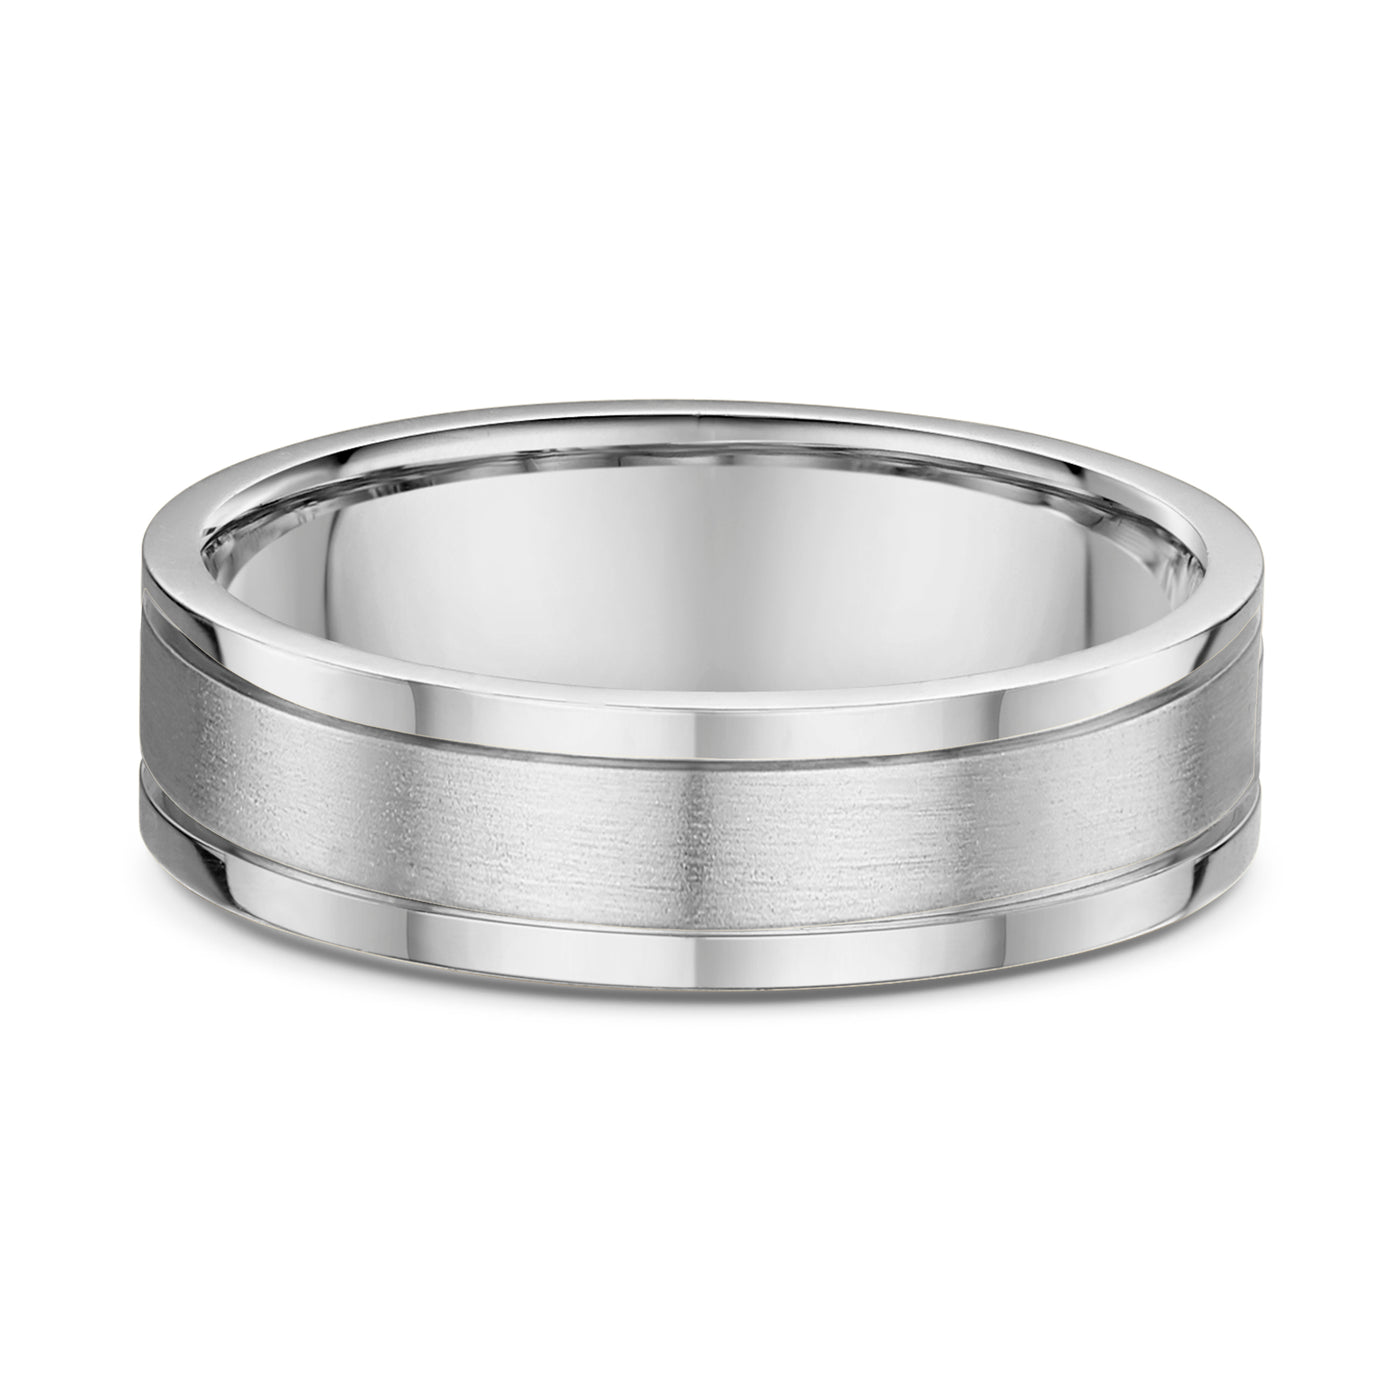 White Gold or Platinum Wedding Ring